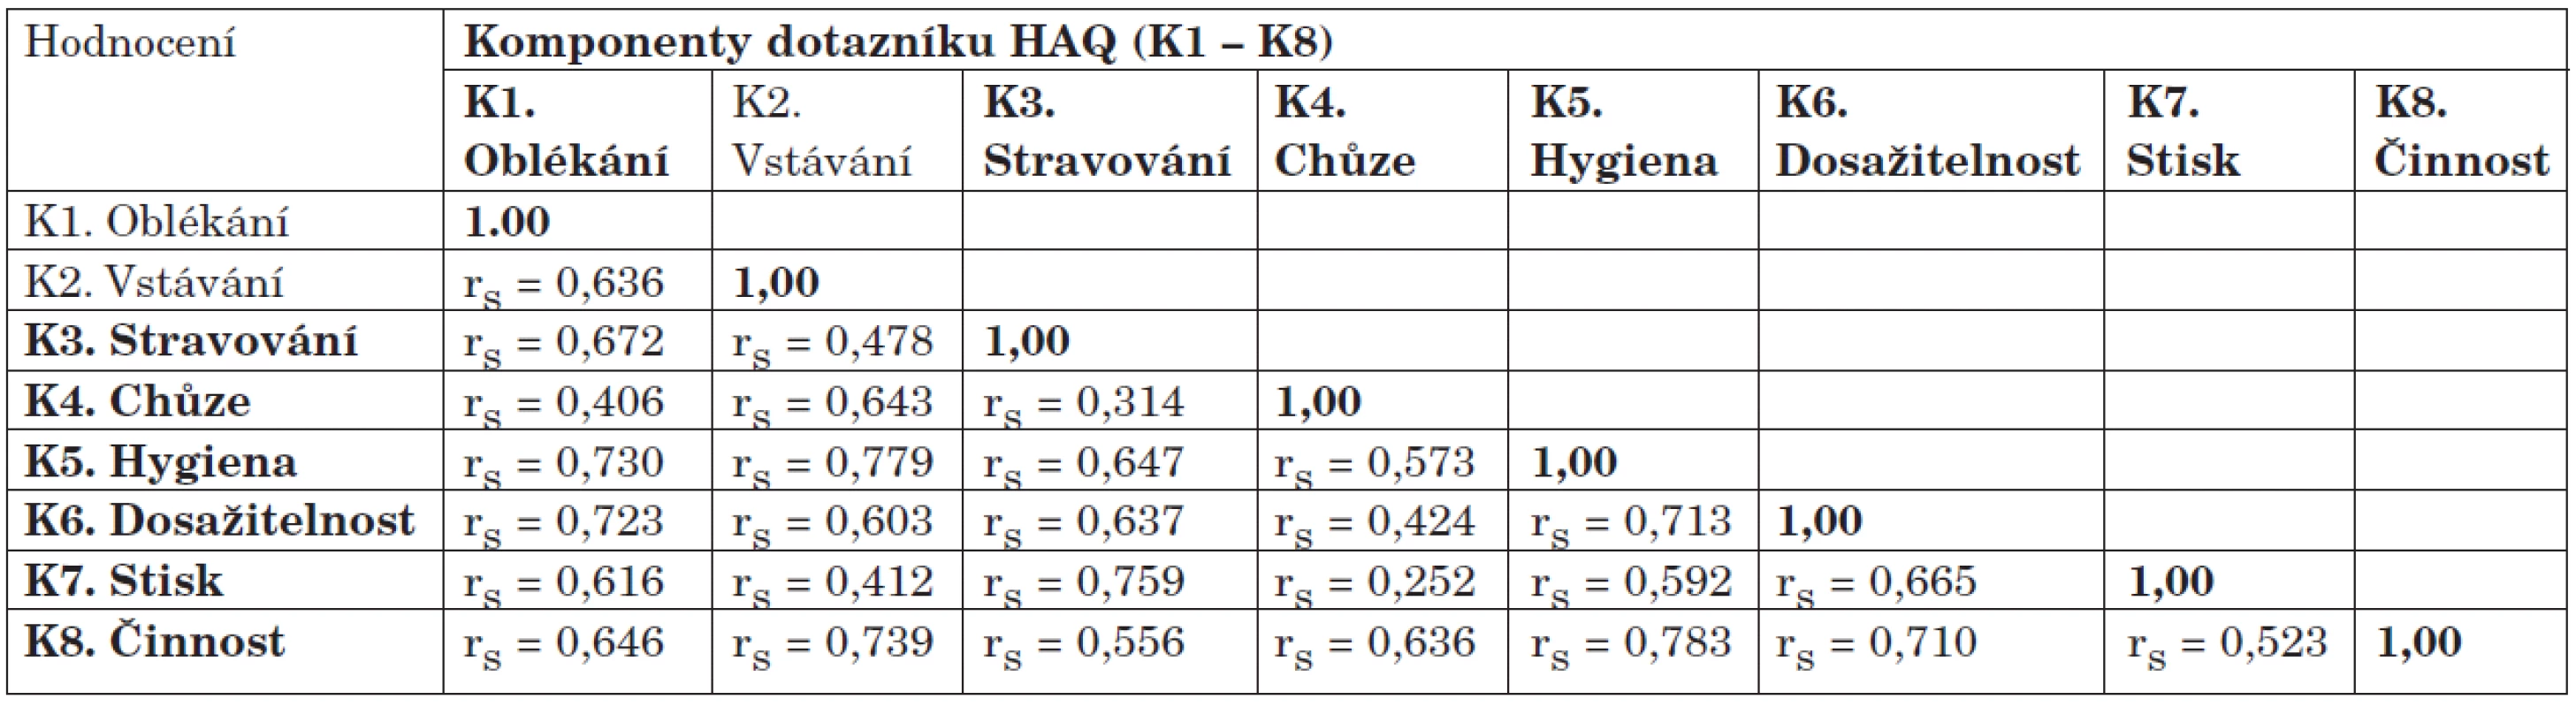 Vnitřní asociační analýza parametrů dotazníku HAQ<sub>CZ</sub><sup>1</sup> hodnocená Spearmanovým korelačním koeficientem <sup>2</sup>